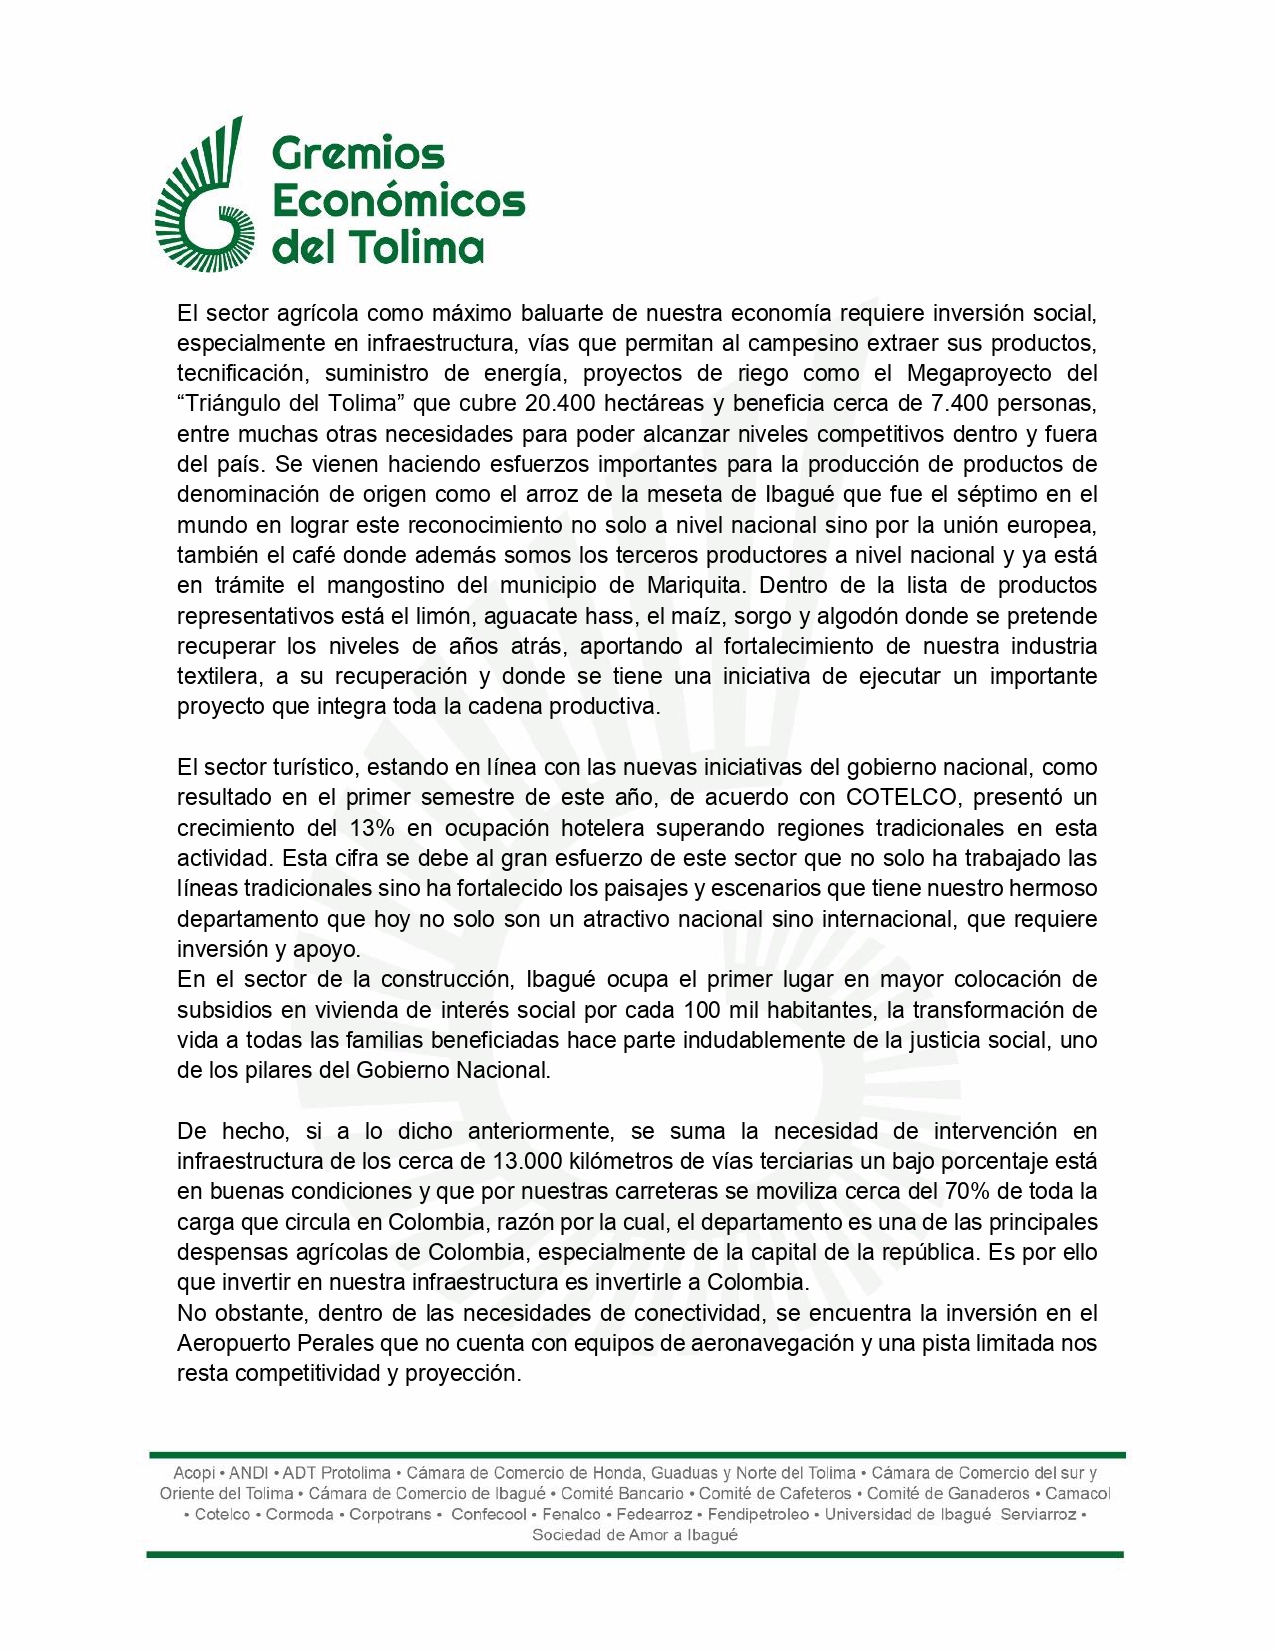 Esta es la carta que los Gremios Económicos del Tolima le enviaron al ministro de Hacienda